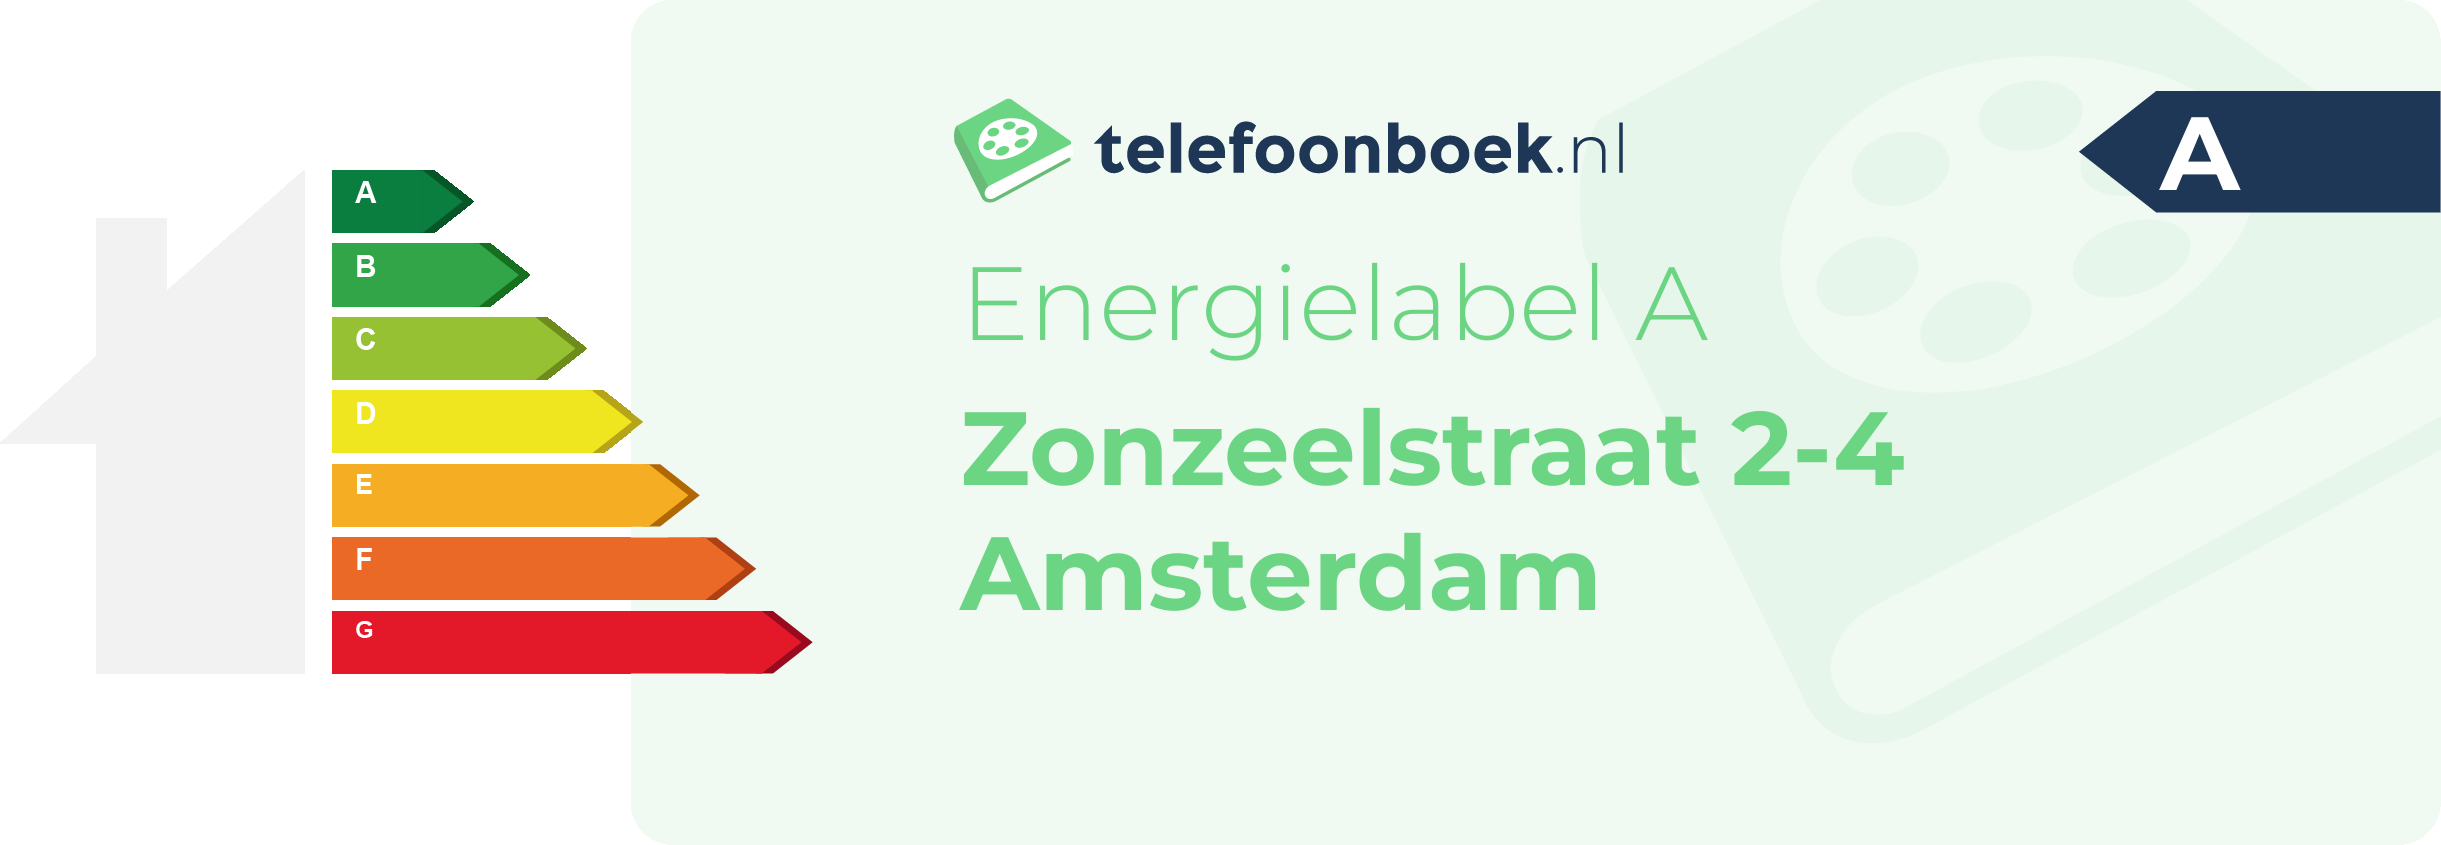 Energielabel Zonzeelstraat 2-4 Amsterdam